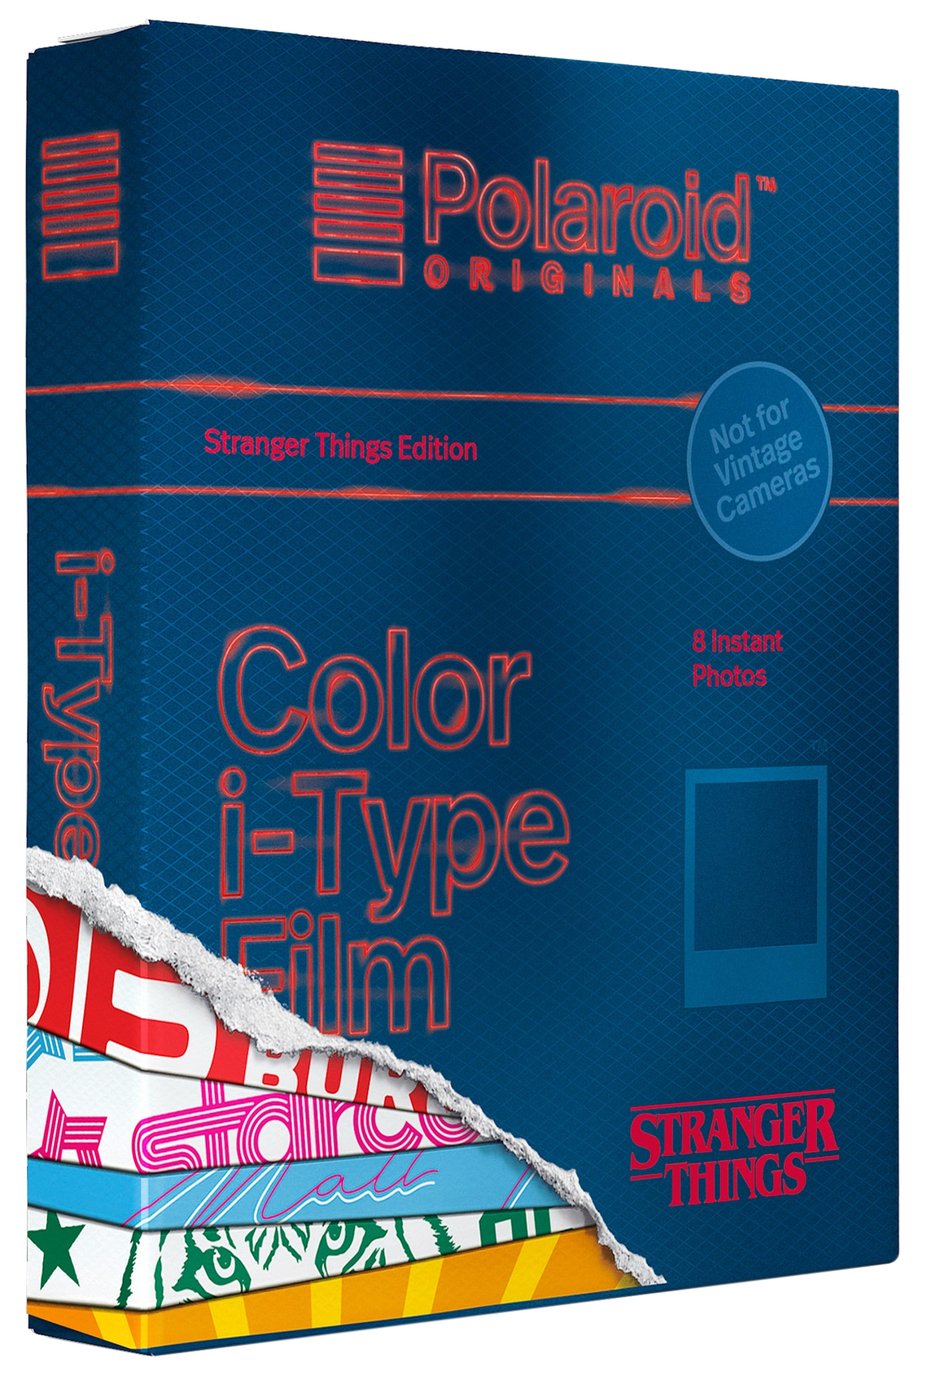 Polaroid Originals Stranger Things I-Type Film